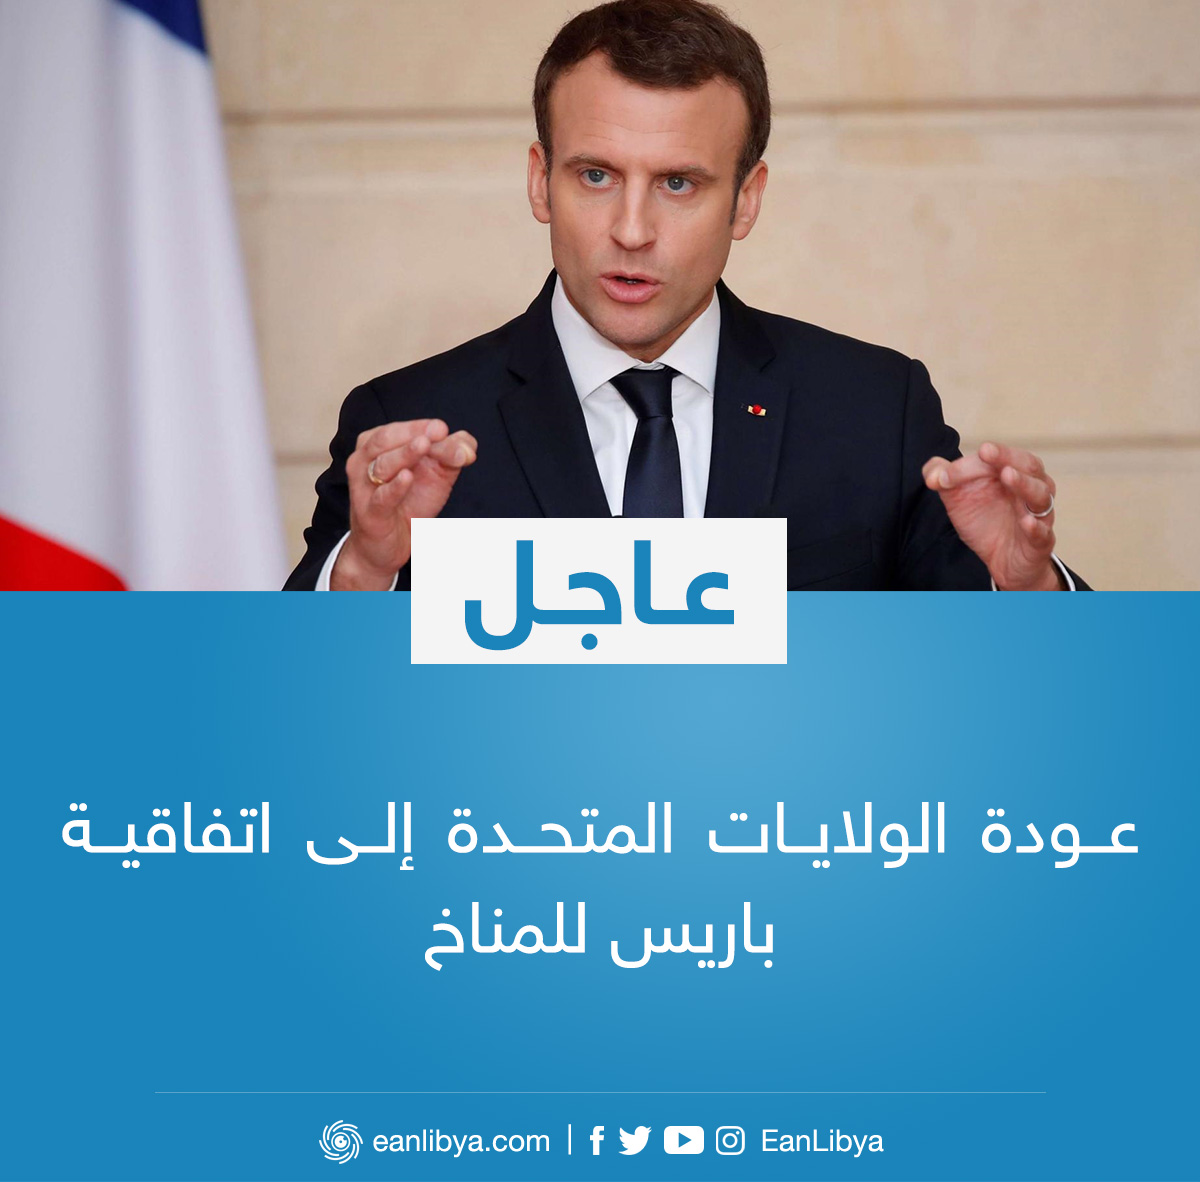 عاجل الرئيس الفرنسي إيمانويل ماكرون يُرحب بعودة الولايات المتحدة إلى اتفاقية باريس للمناخ عين ليبيا